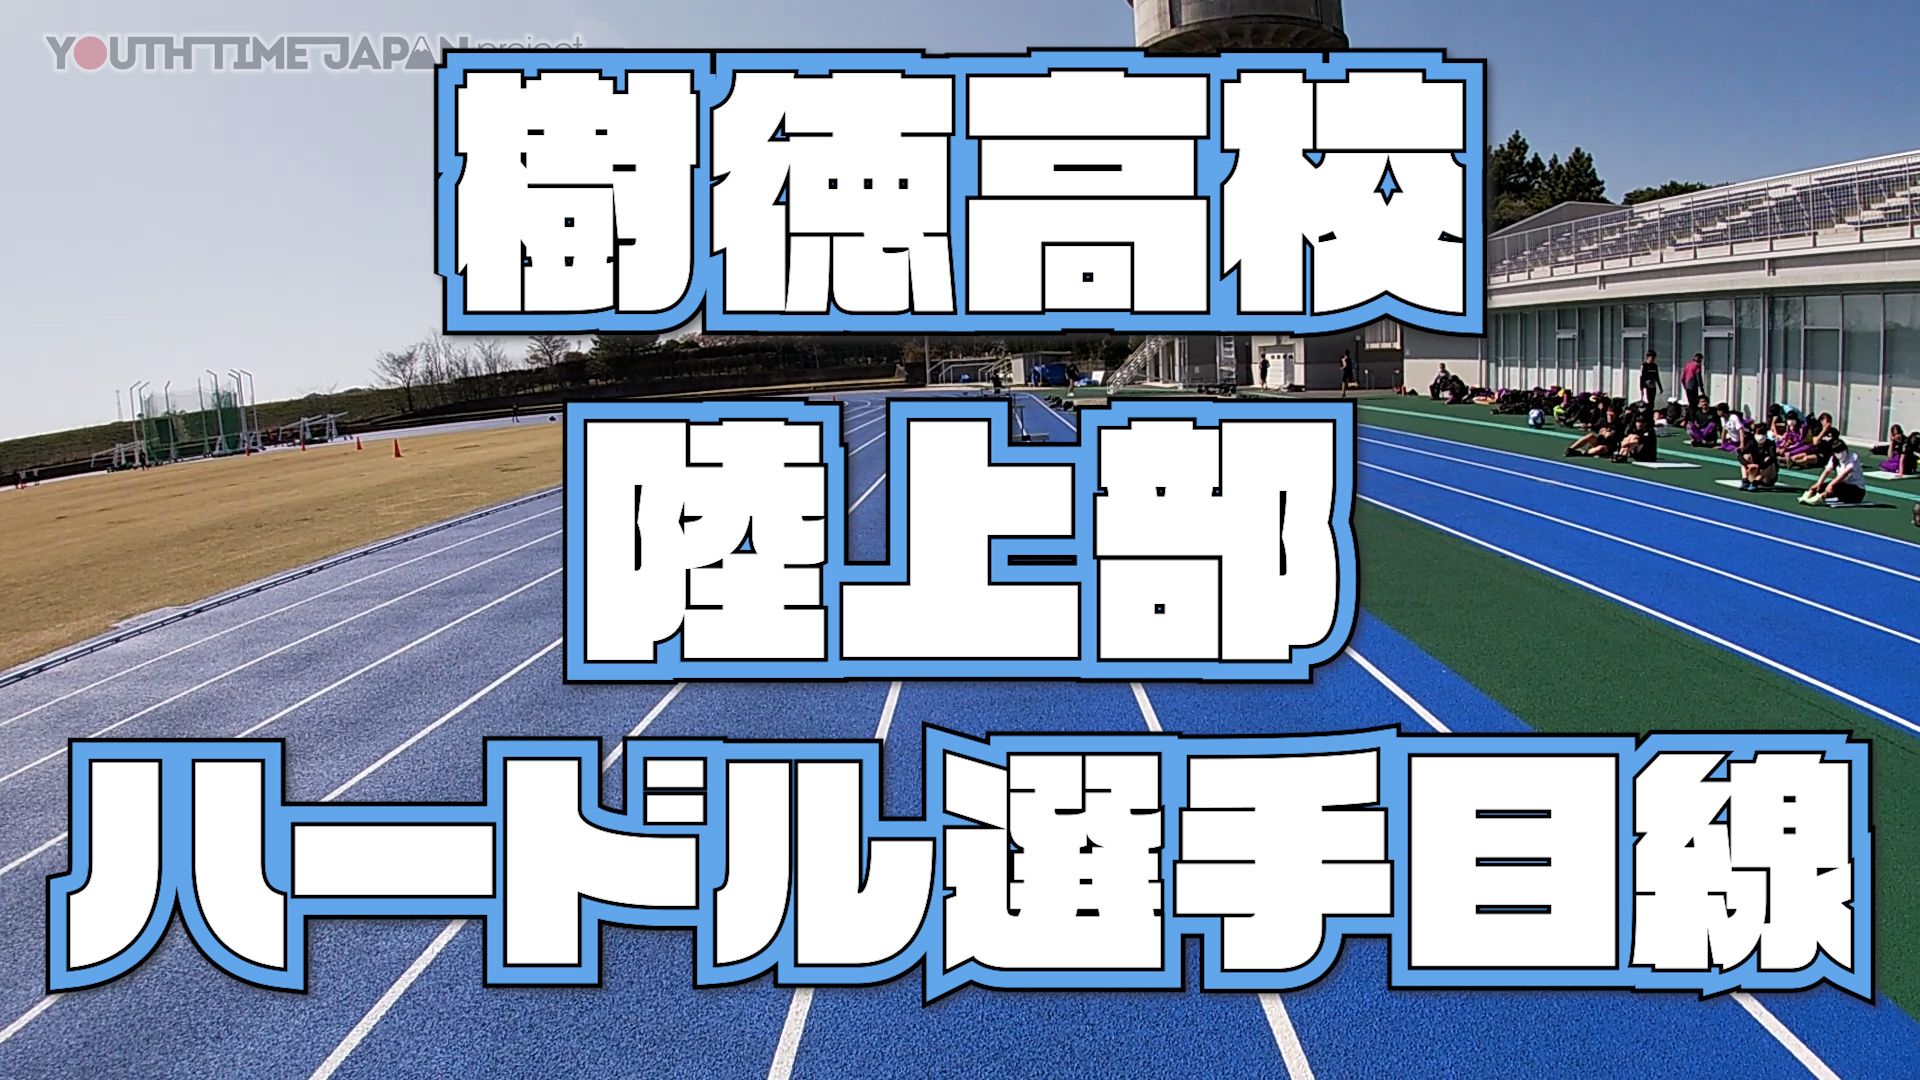 【目線動画】樹徳高校 陸上部 ハードル選手の目線